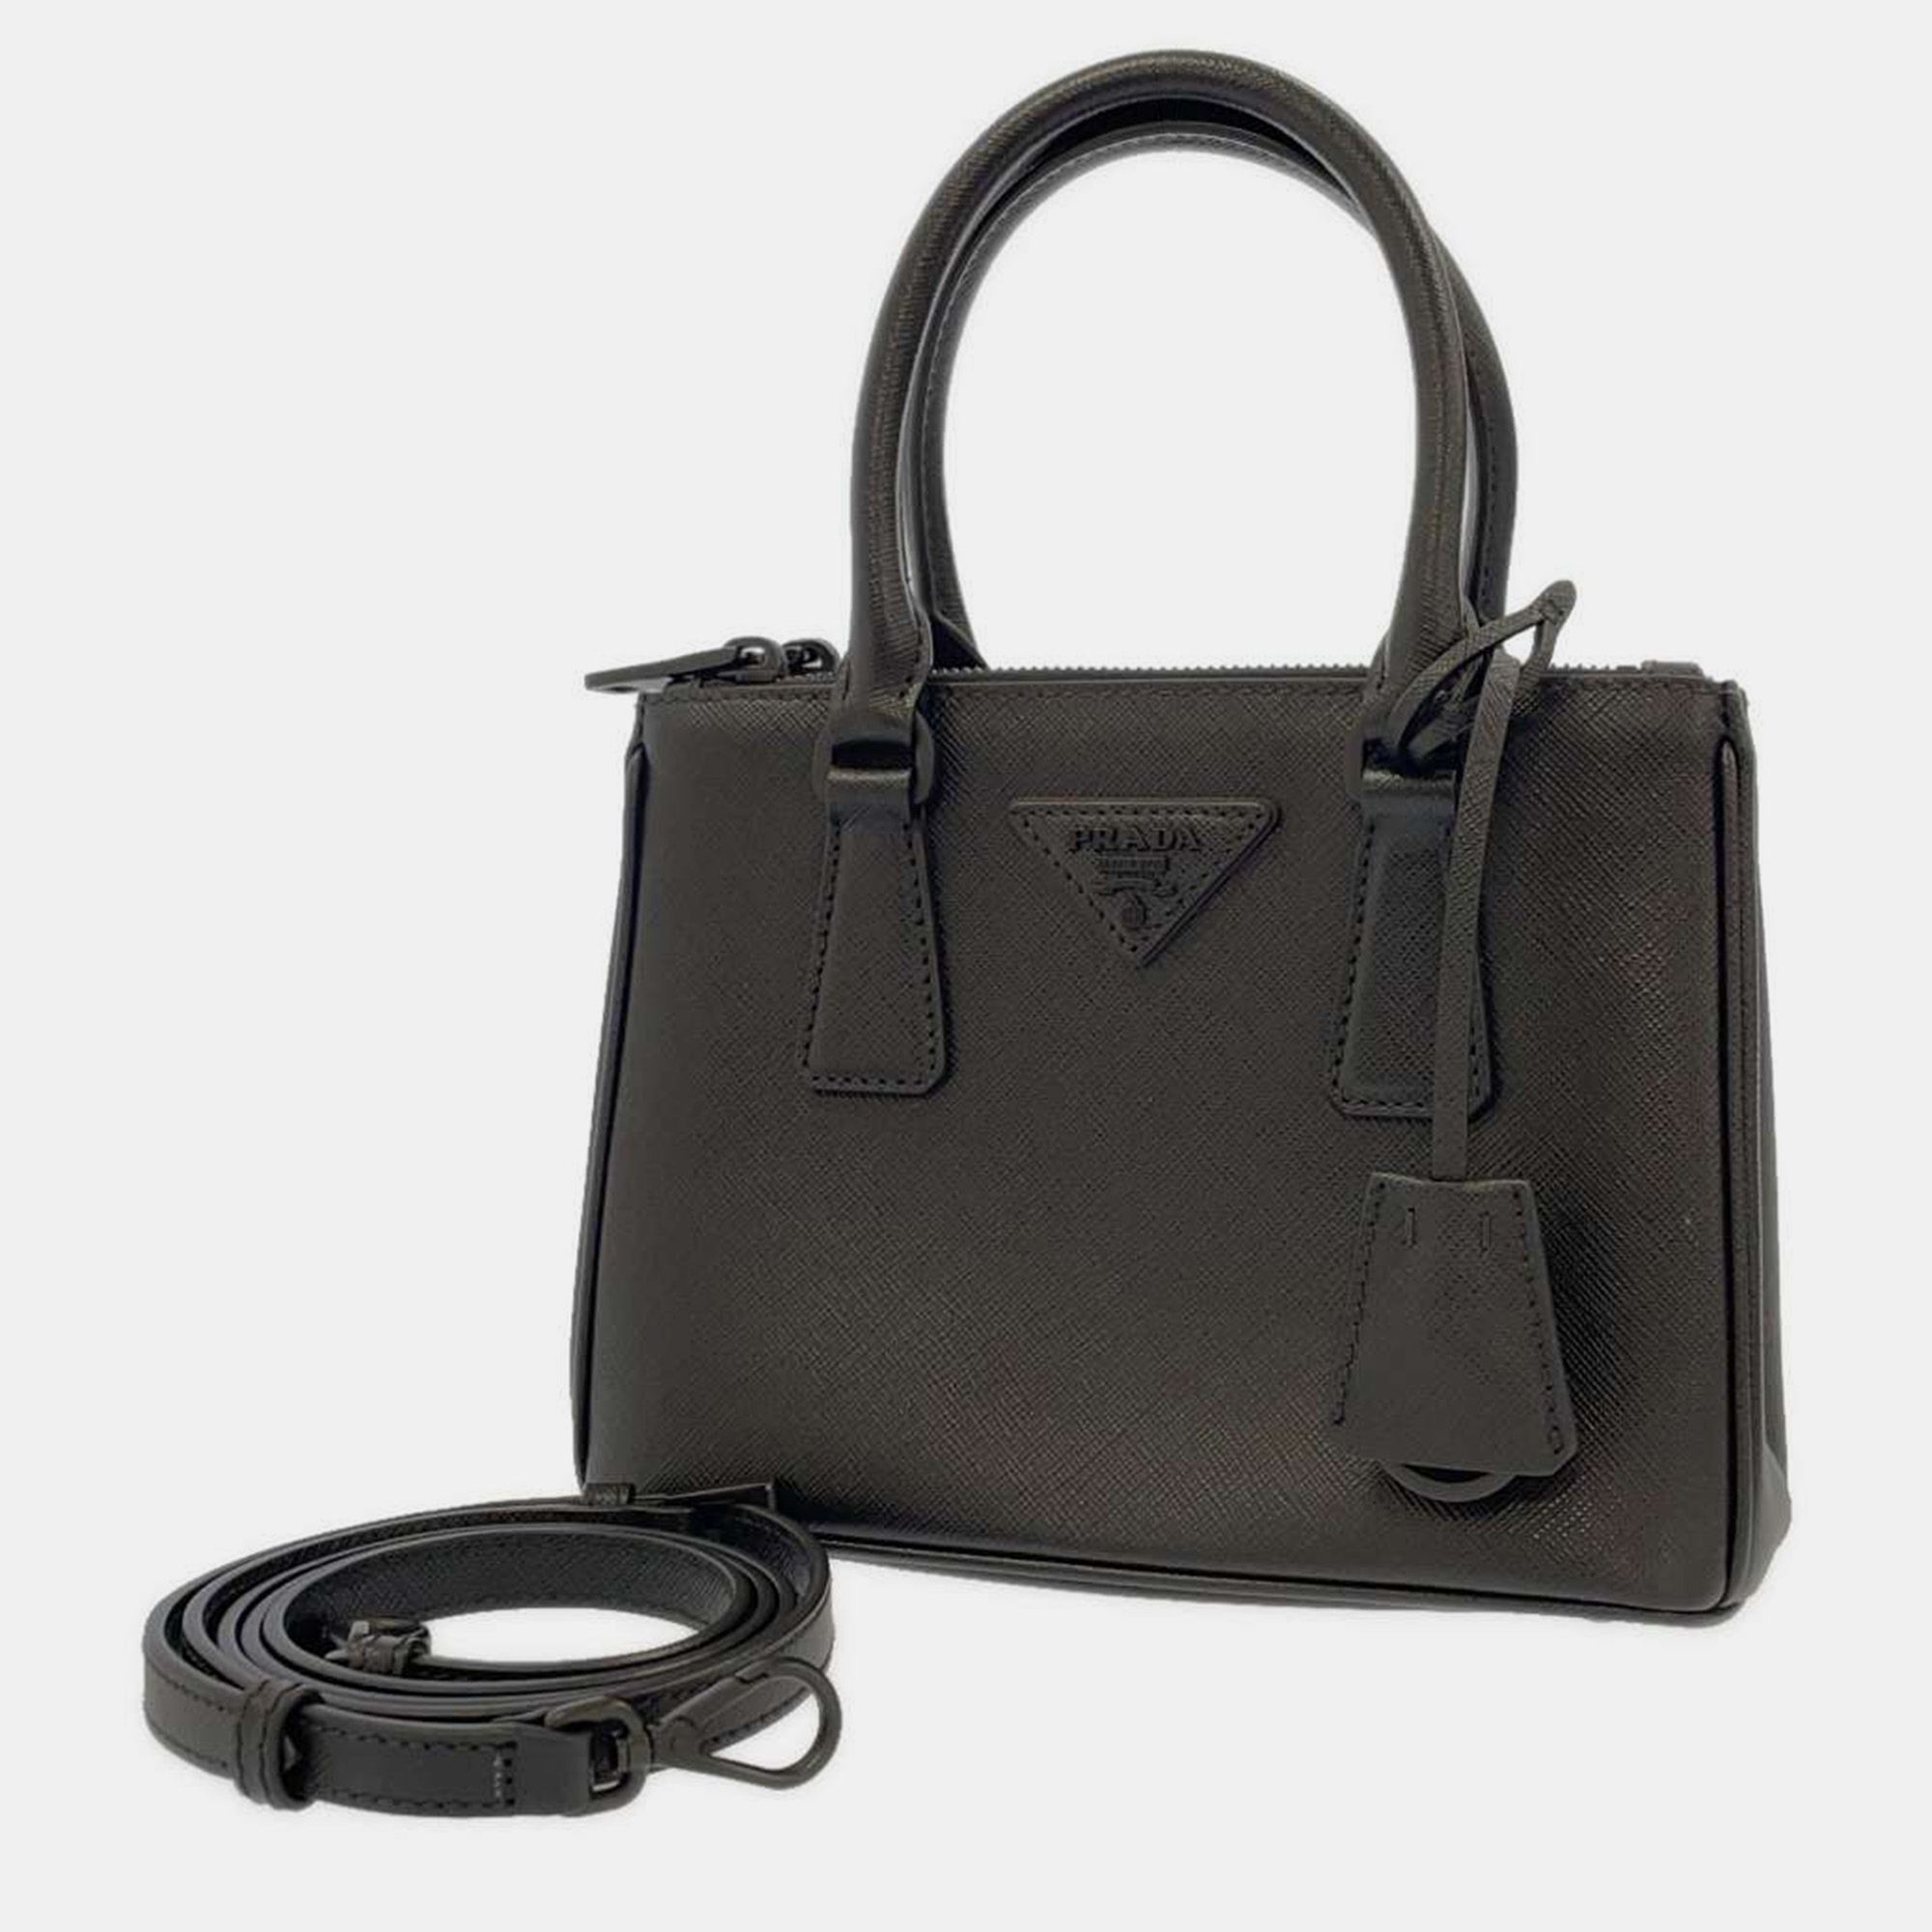 Pre-owned Prada Black Leather Mini Saffiano Lux Galleria Double Zip Tote